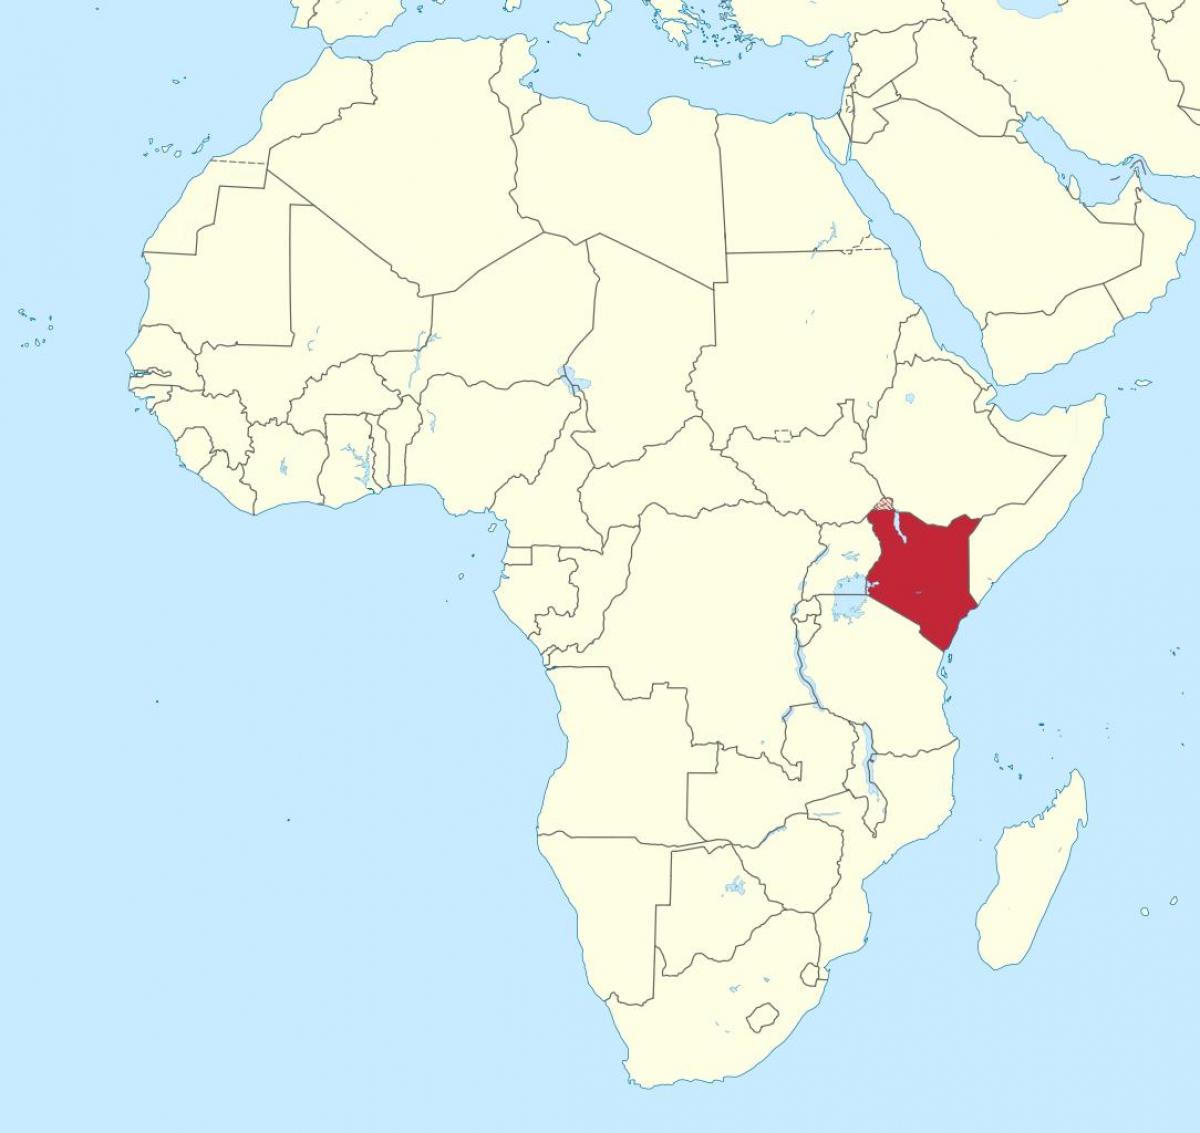 რუკა აფრიკაში აჩვენებს კენიაში